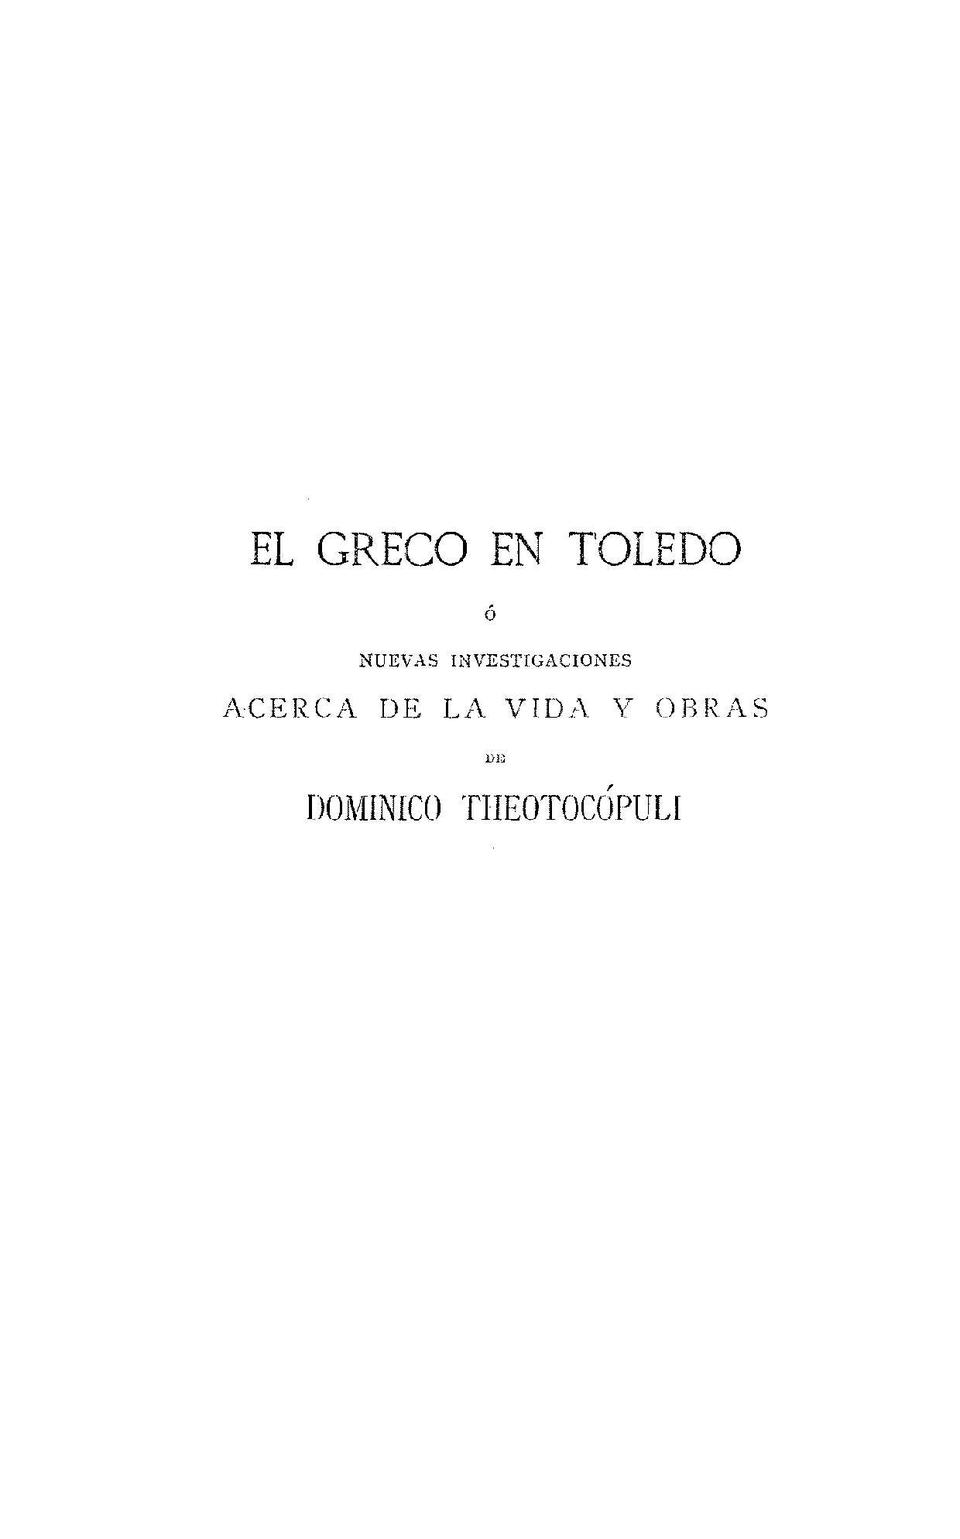 El Greco en Toledo o nuevas investigaciones acerca de la vida y obras de Dominico Theotocopuli / Francisco de Borja San Román y Fernández; introducción de M. B. Cossio.-. [Monografía]